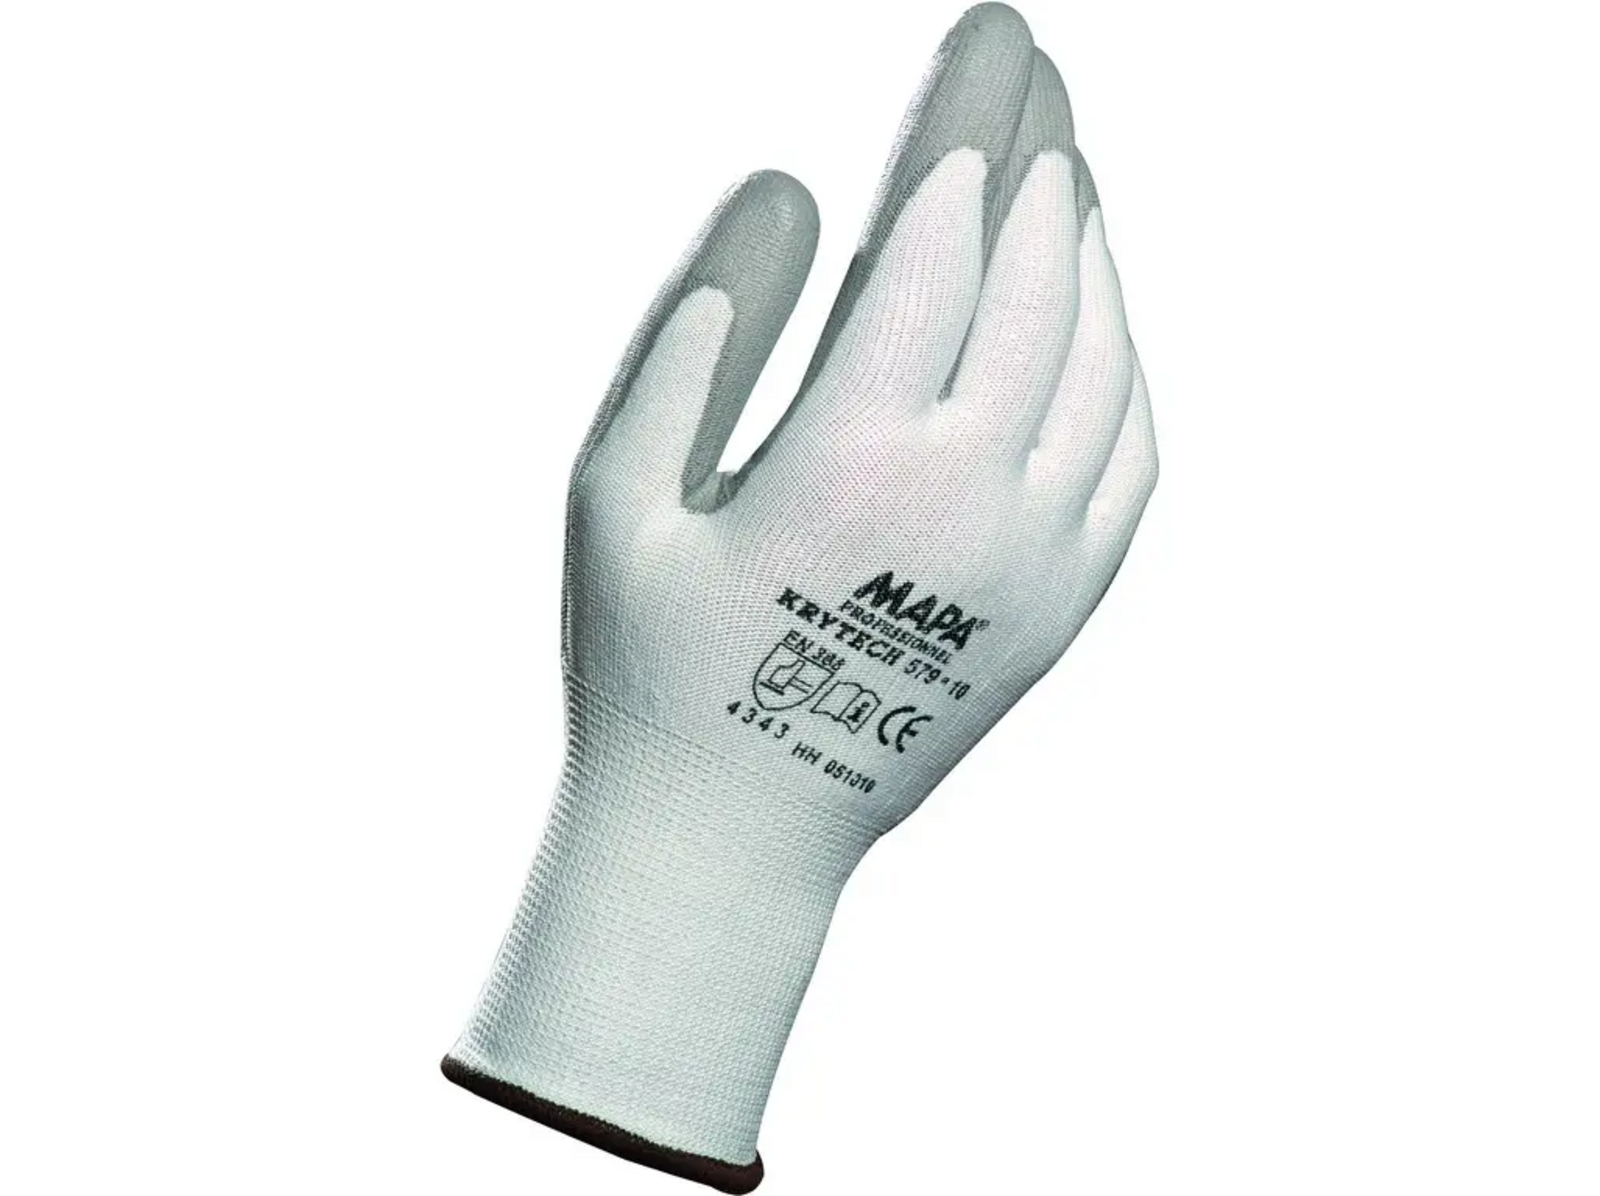 Protiporezové rukavice Mapa Krytech 579 - veľkosť: 10/XL, farba: biela/sivá